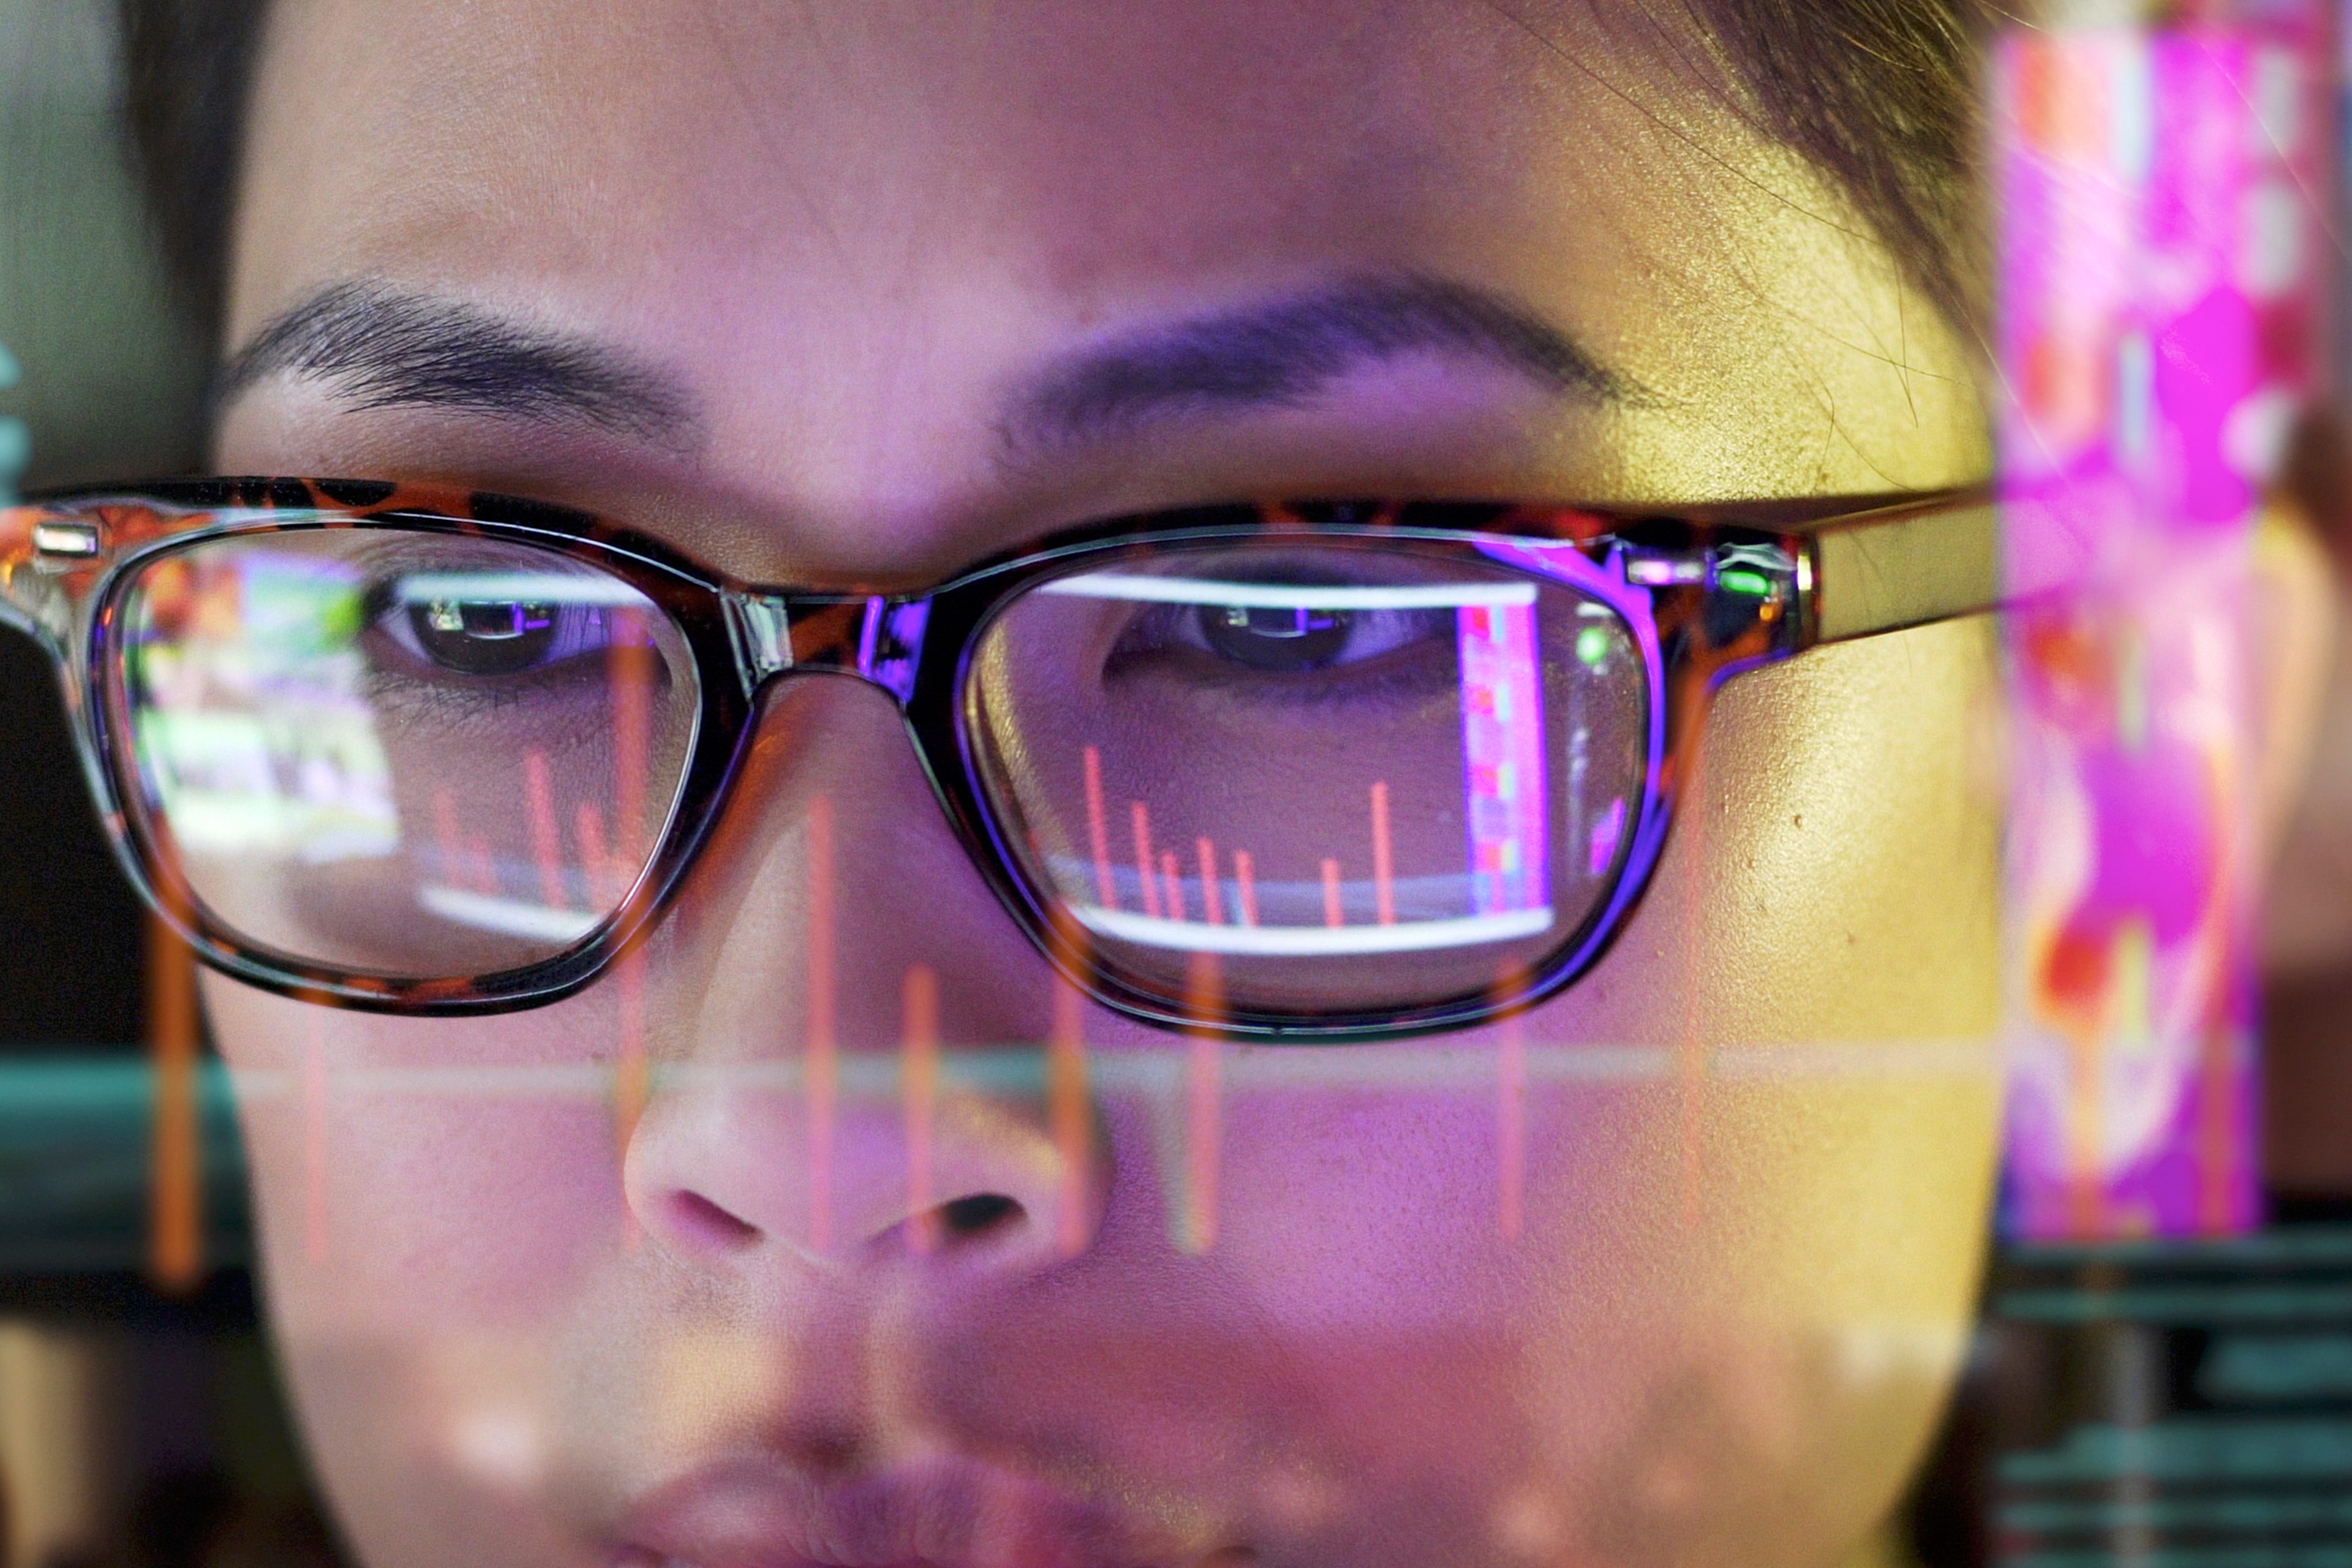 Affichage d’un ordinateur reflété dans les lunettes d’une femme